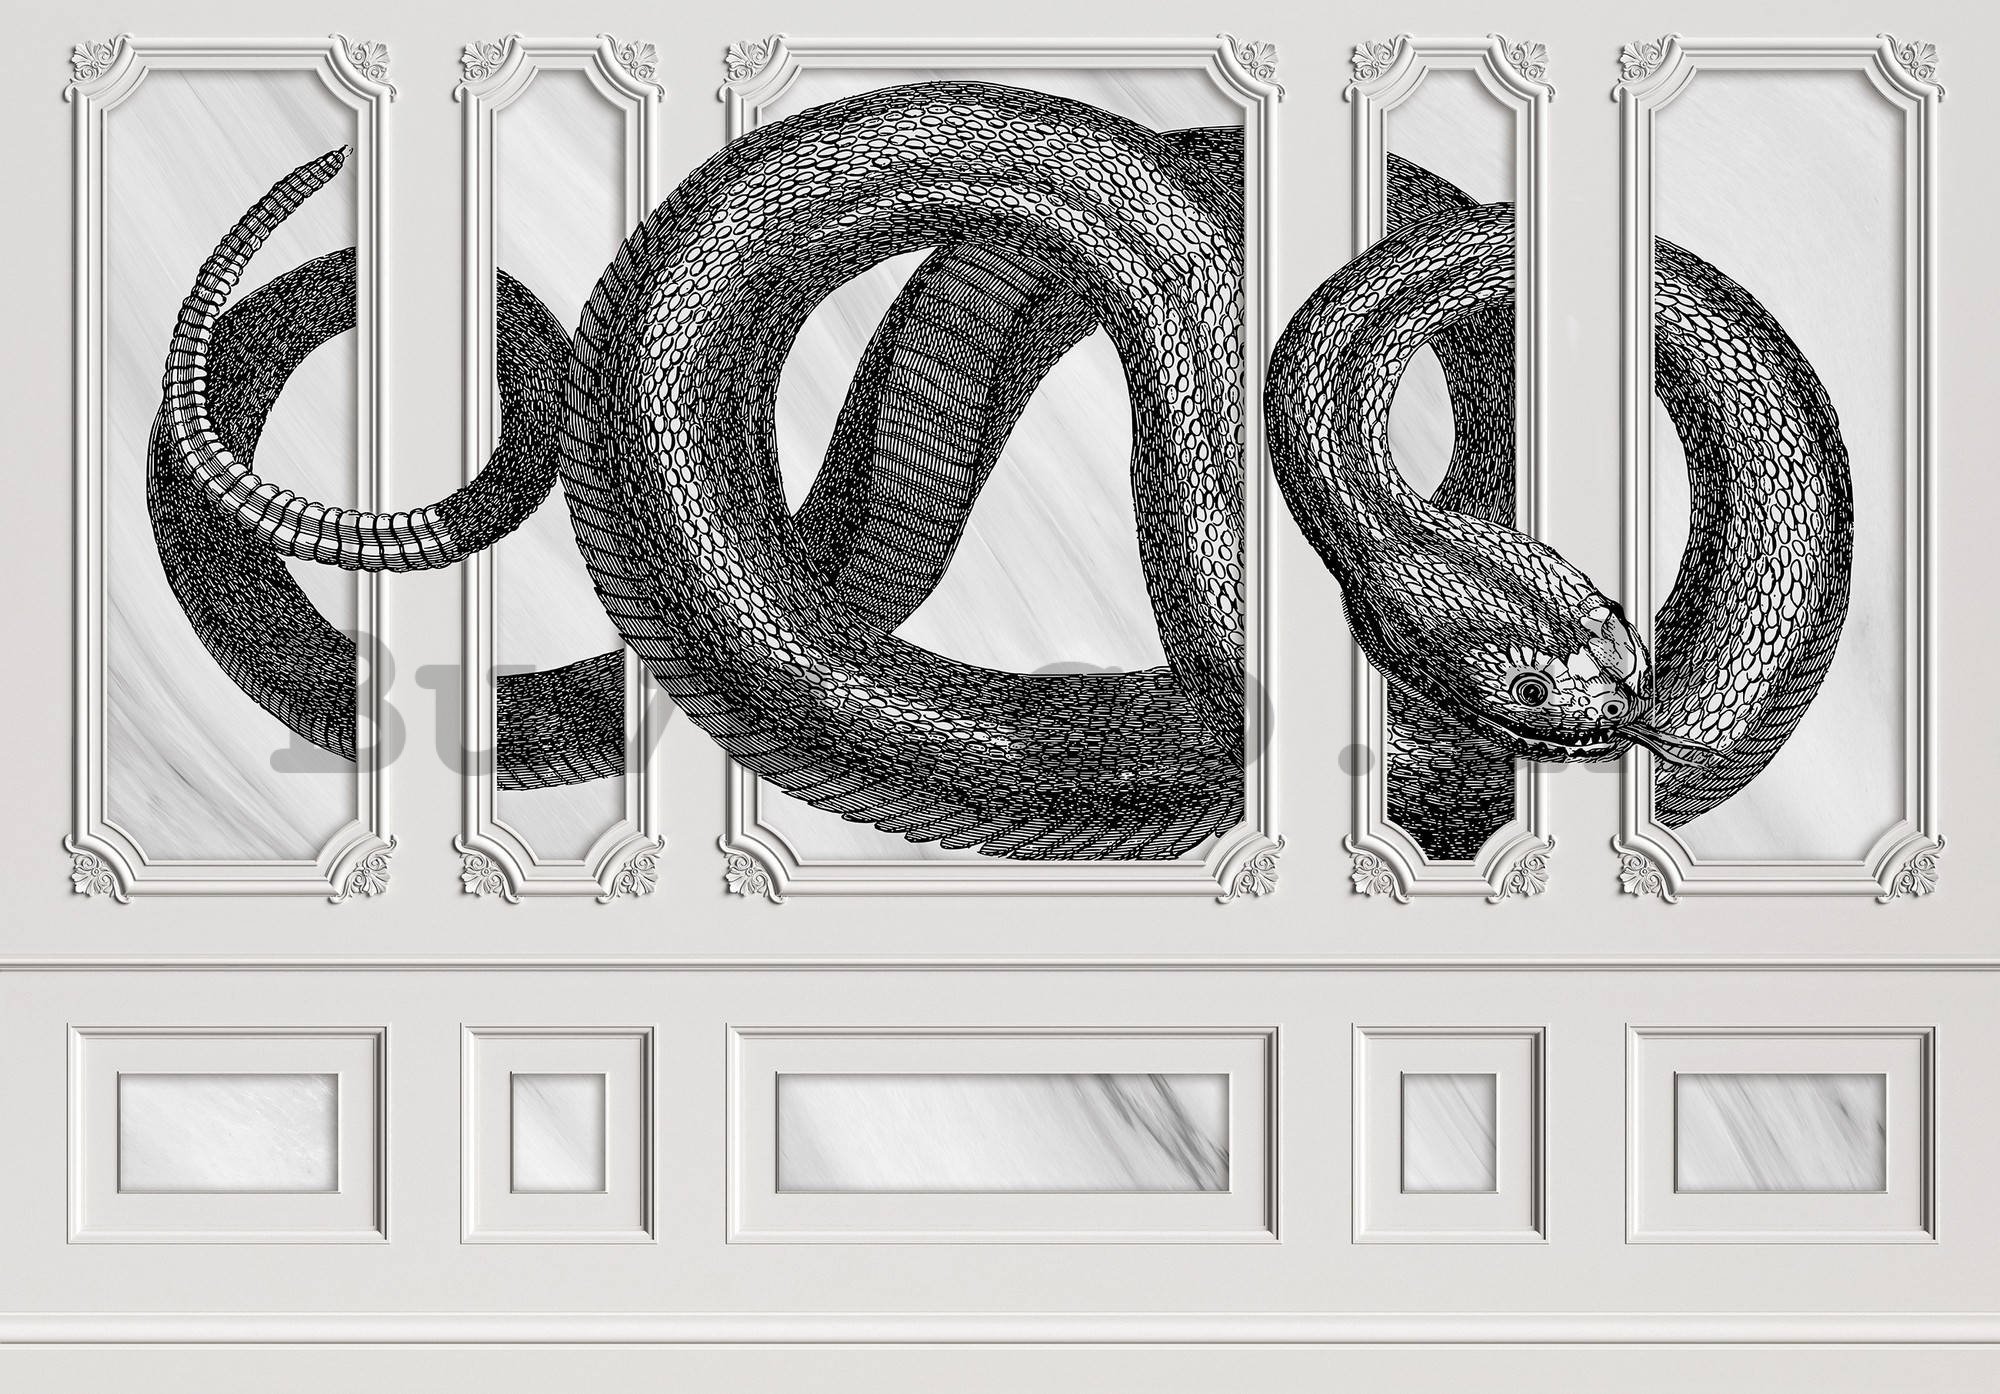 Wall mural vlies: Serpent decoration - 254x184 cm